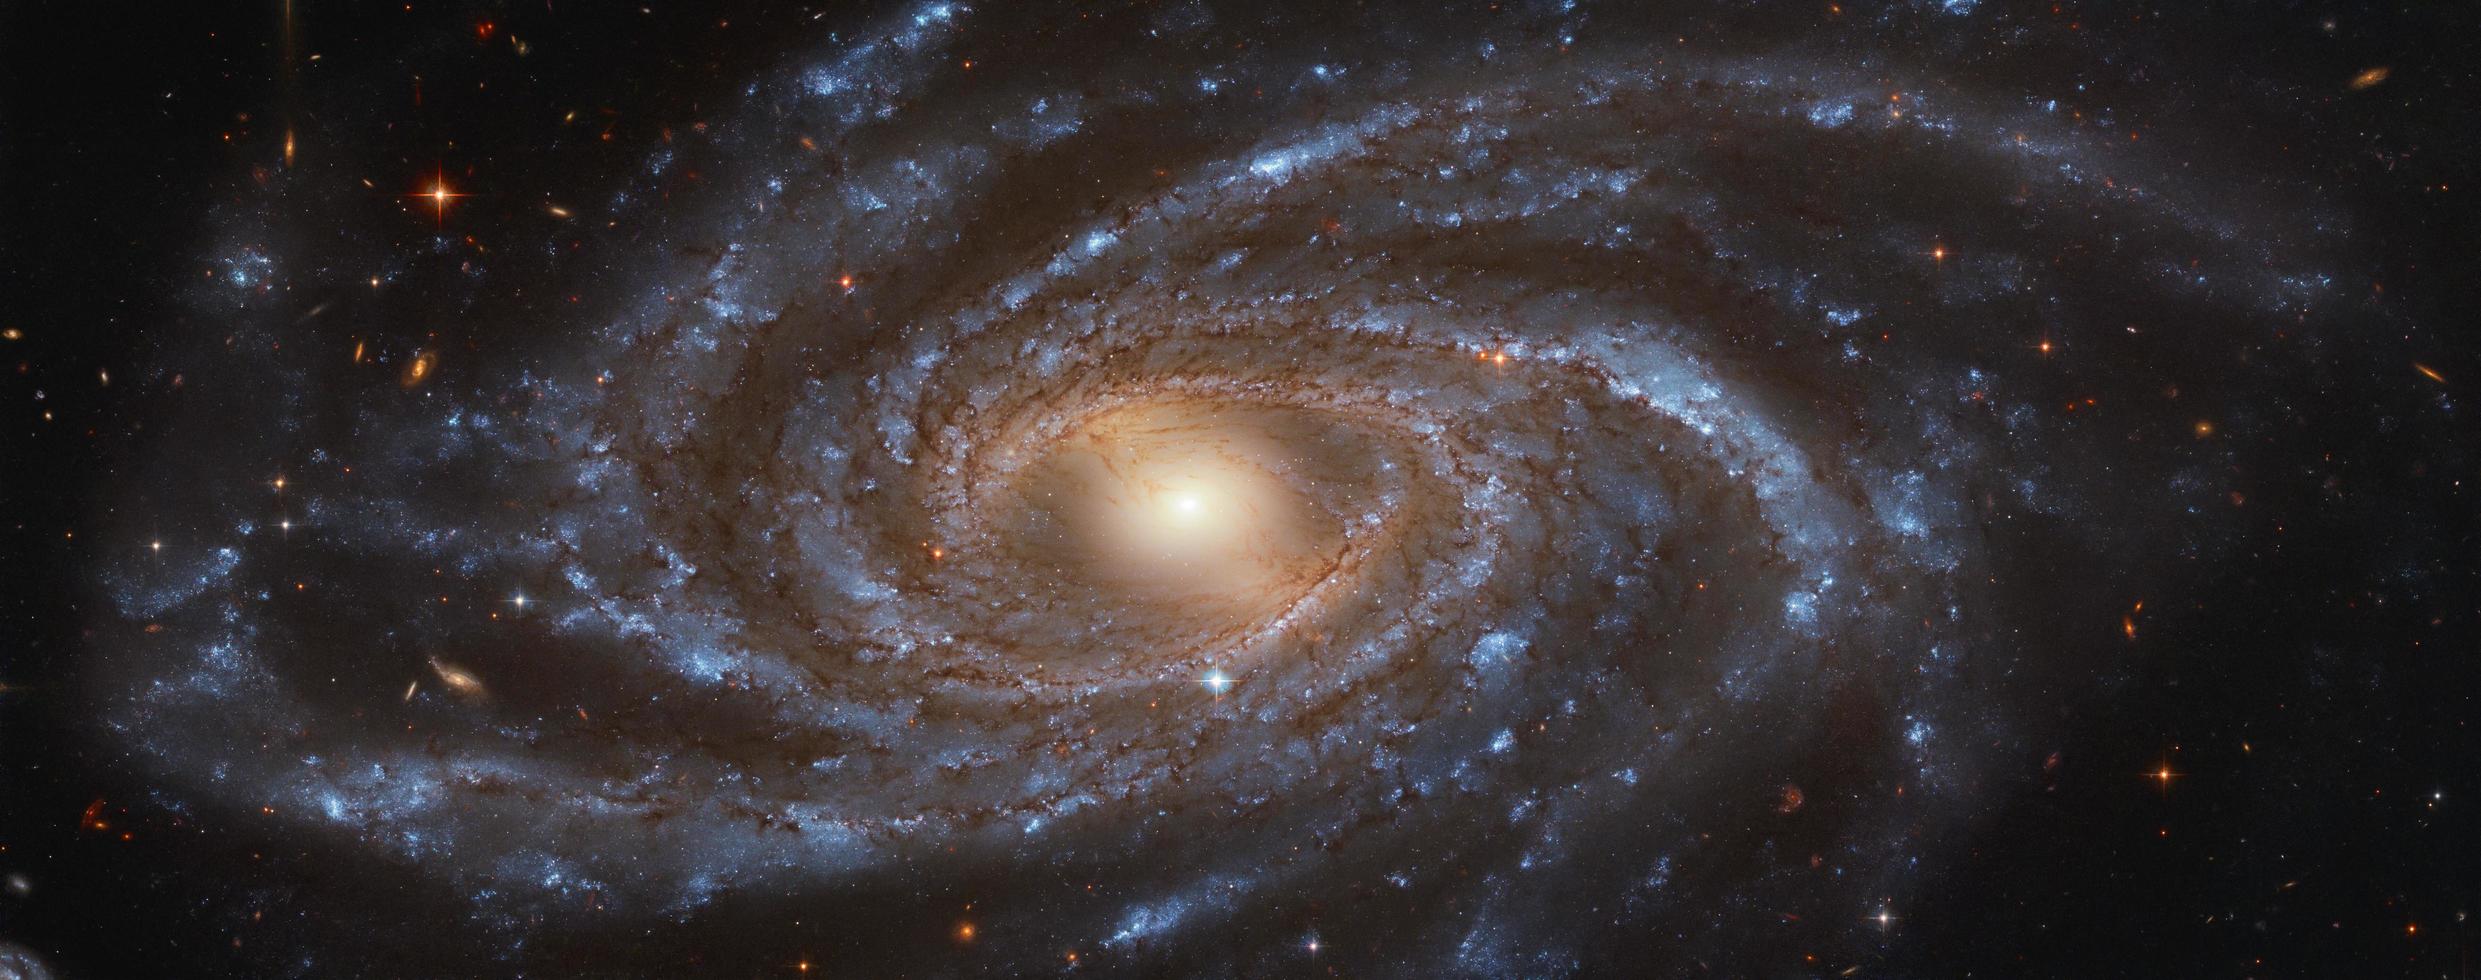 la galaxia ngc 2336 capturada por el telescopio espacial hubble foto